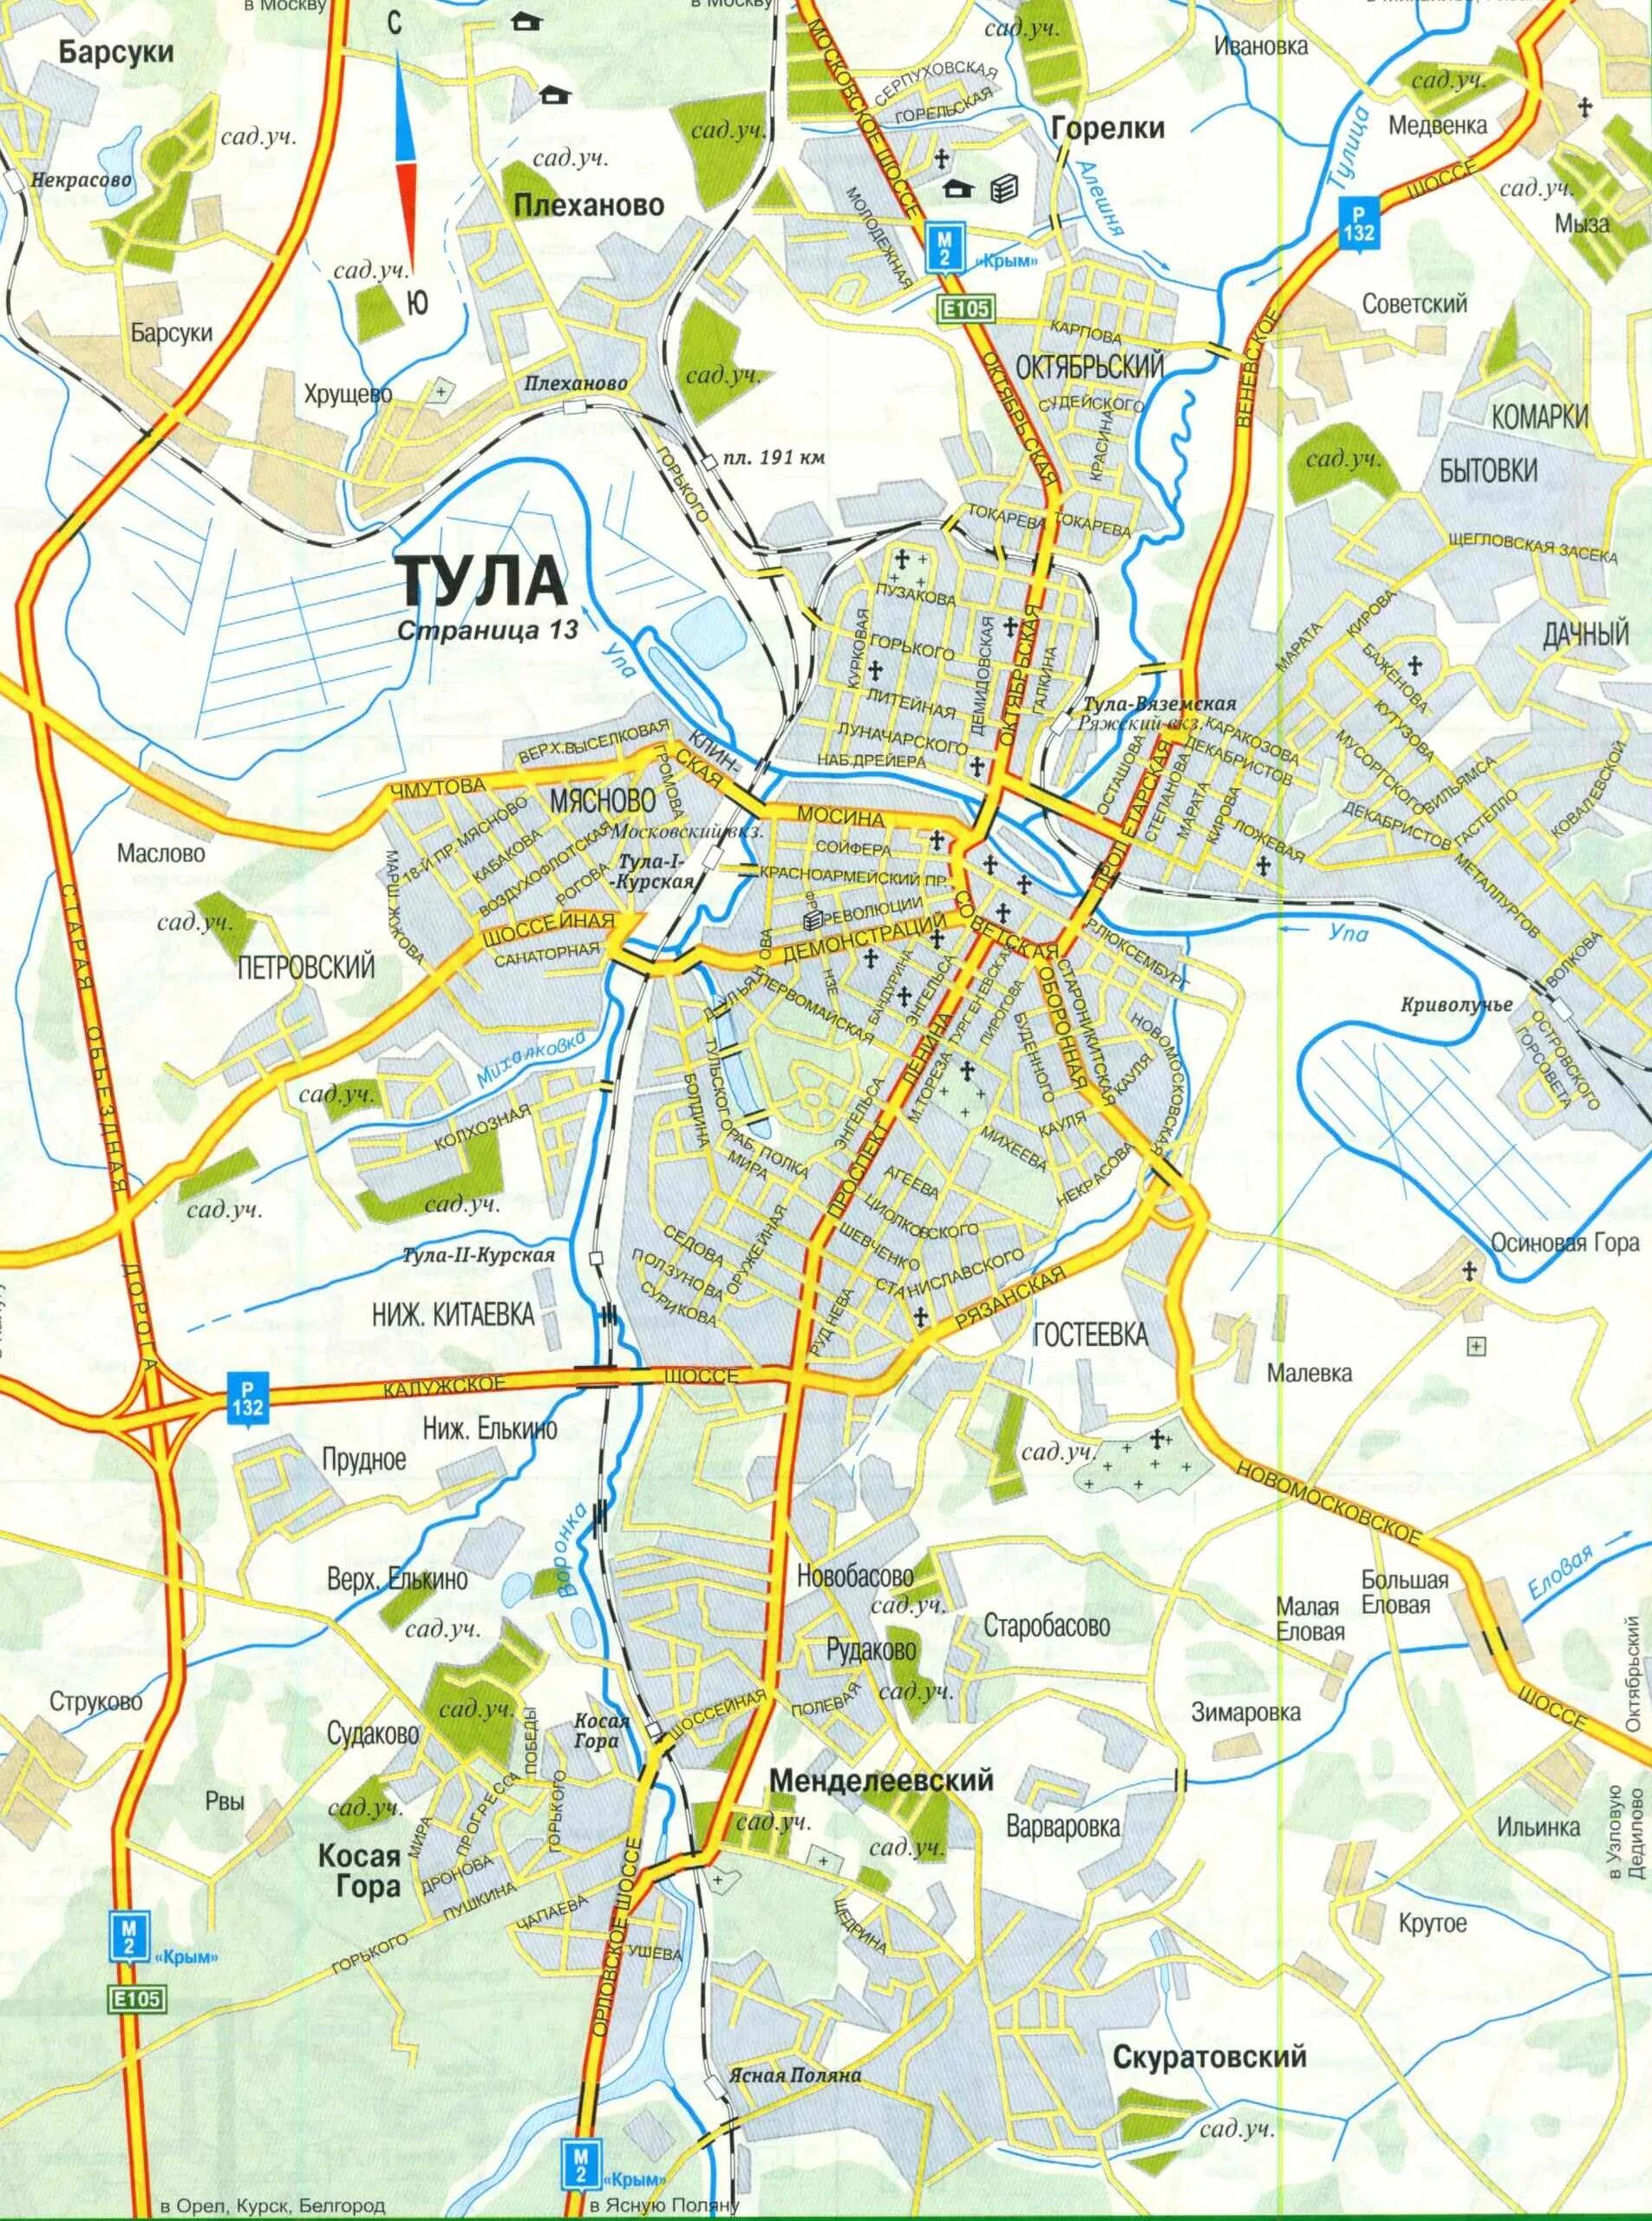 Тула это где. Тула достопримечательности карта с достопримечательностями. Город Тула на карте Тульской области. Карта города: Тула. Карта Тулы с достопримечательностями.